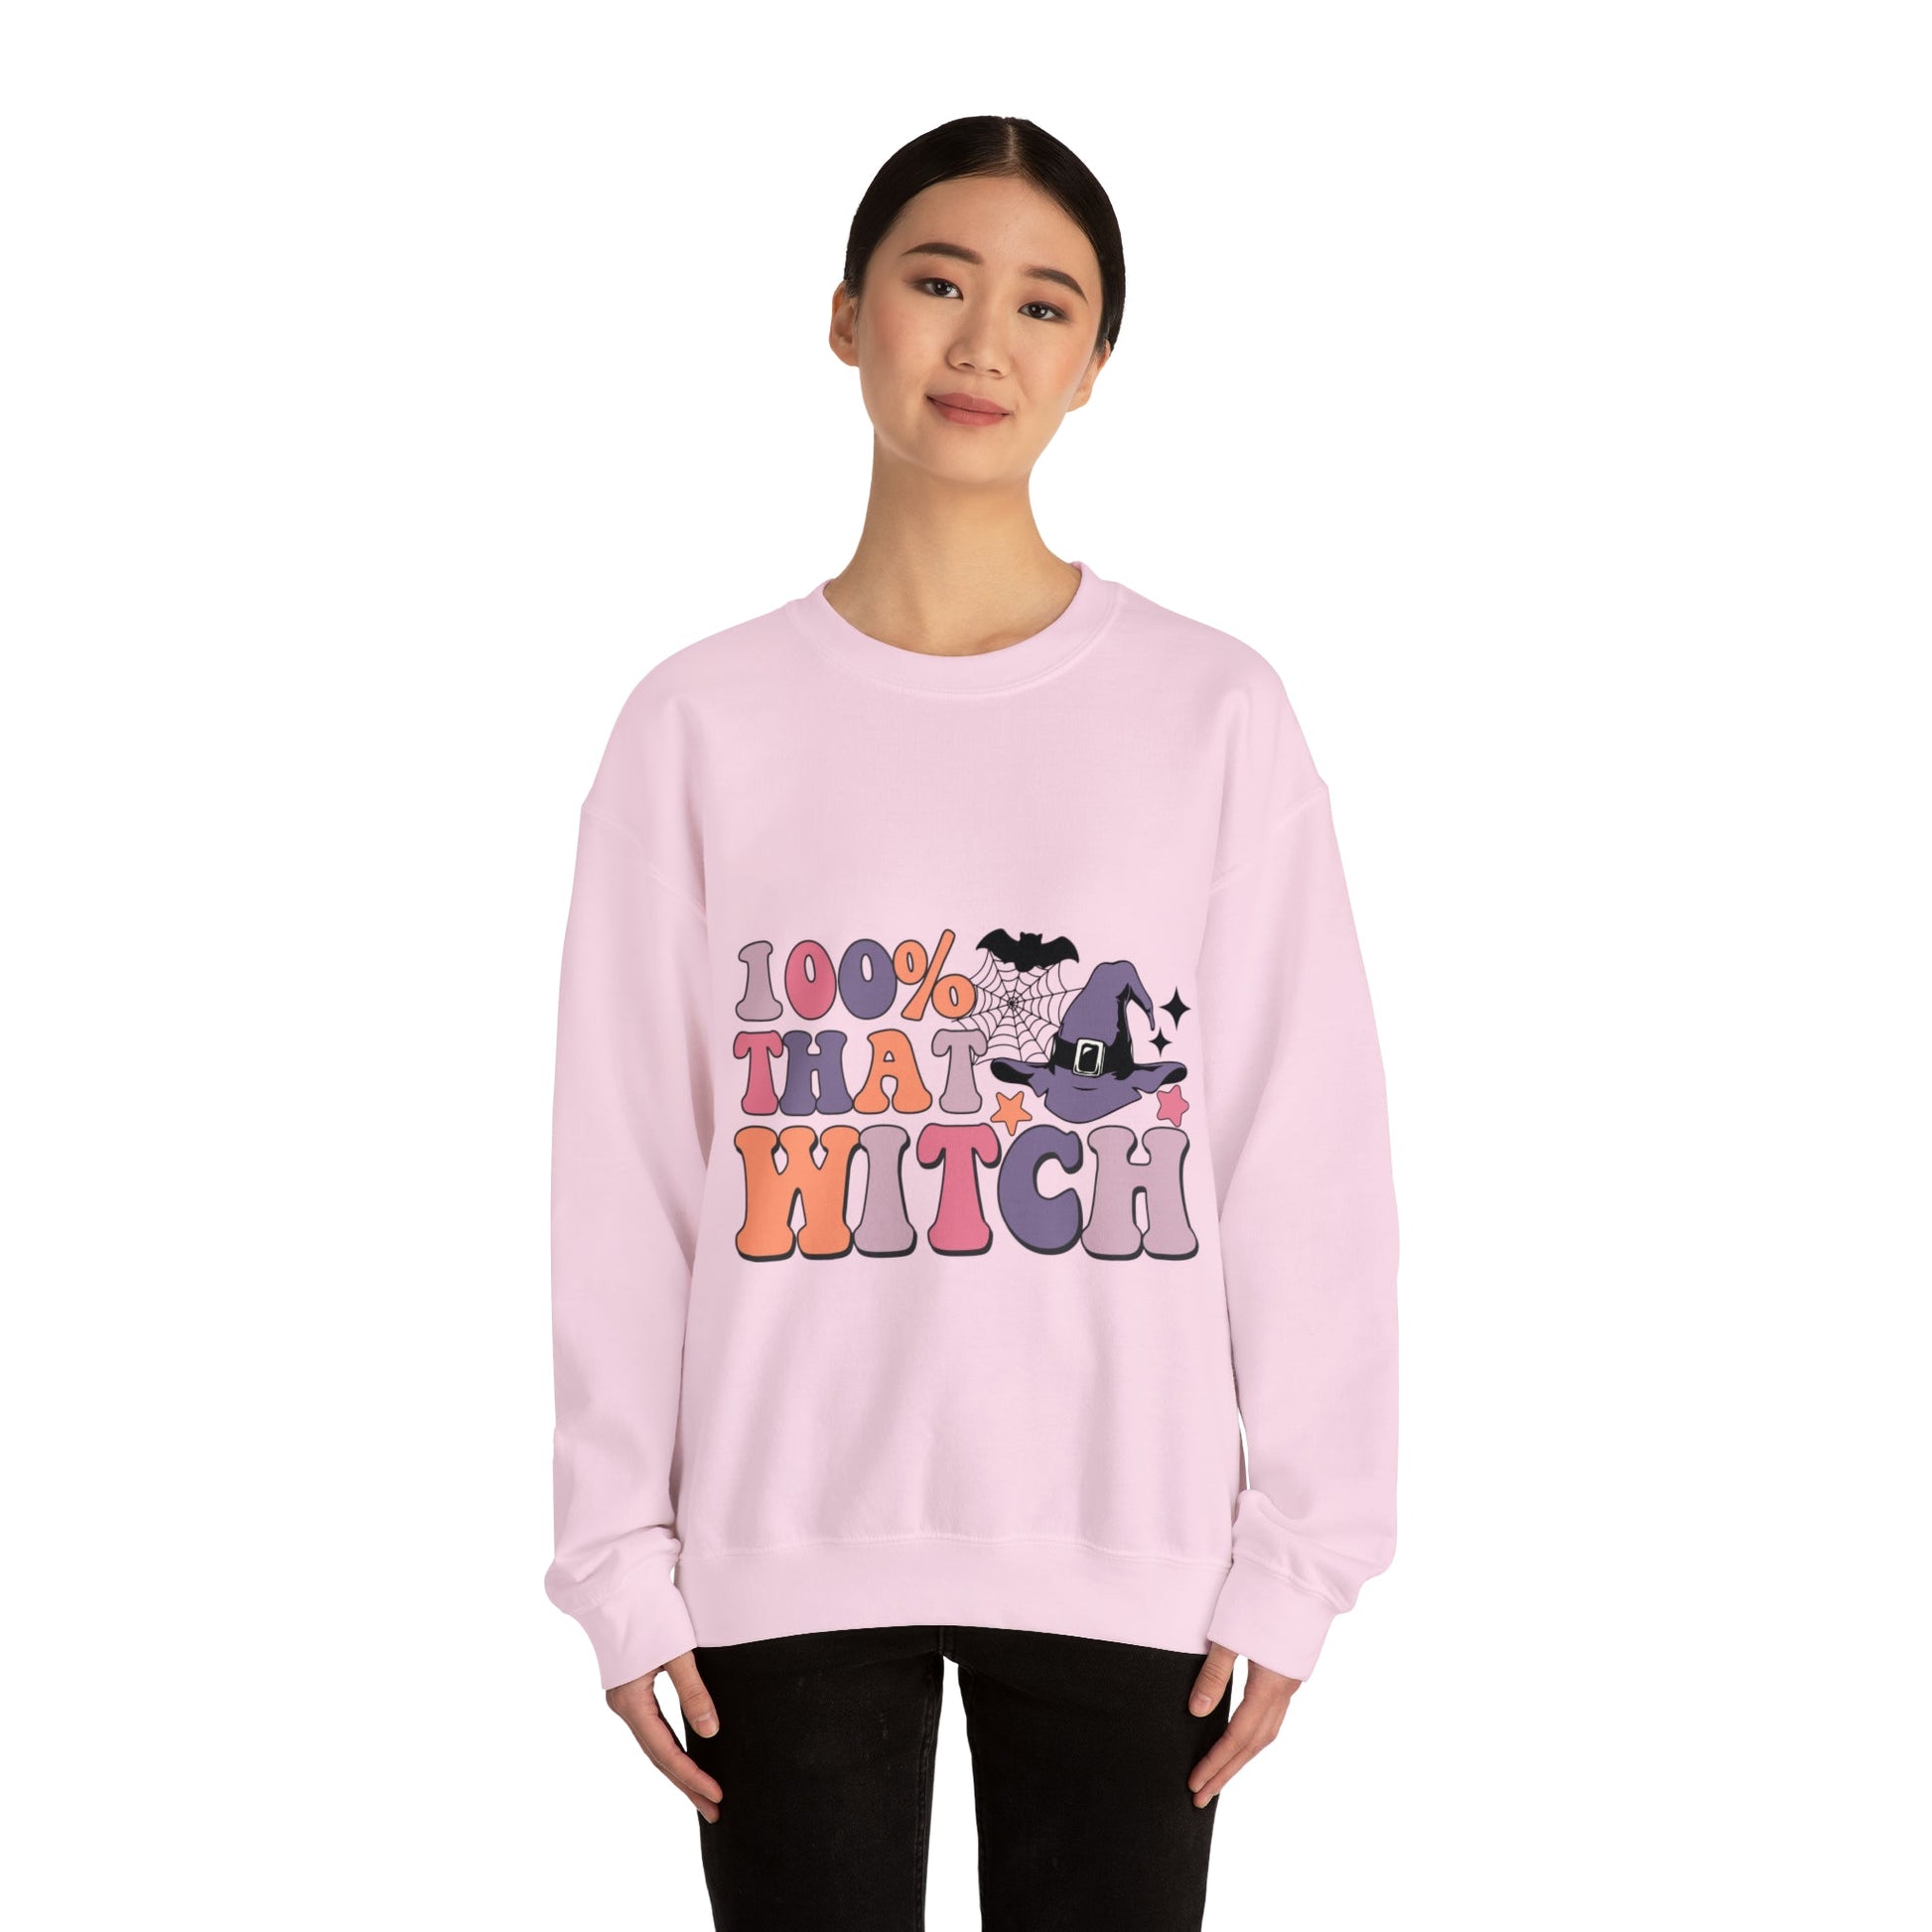 100% That Witch Sweatshirt - Designs by Lauren Ann